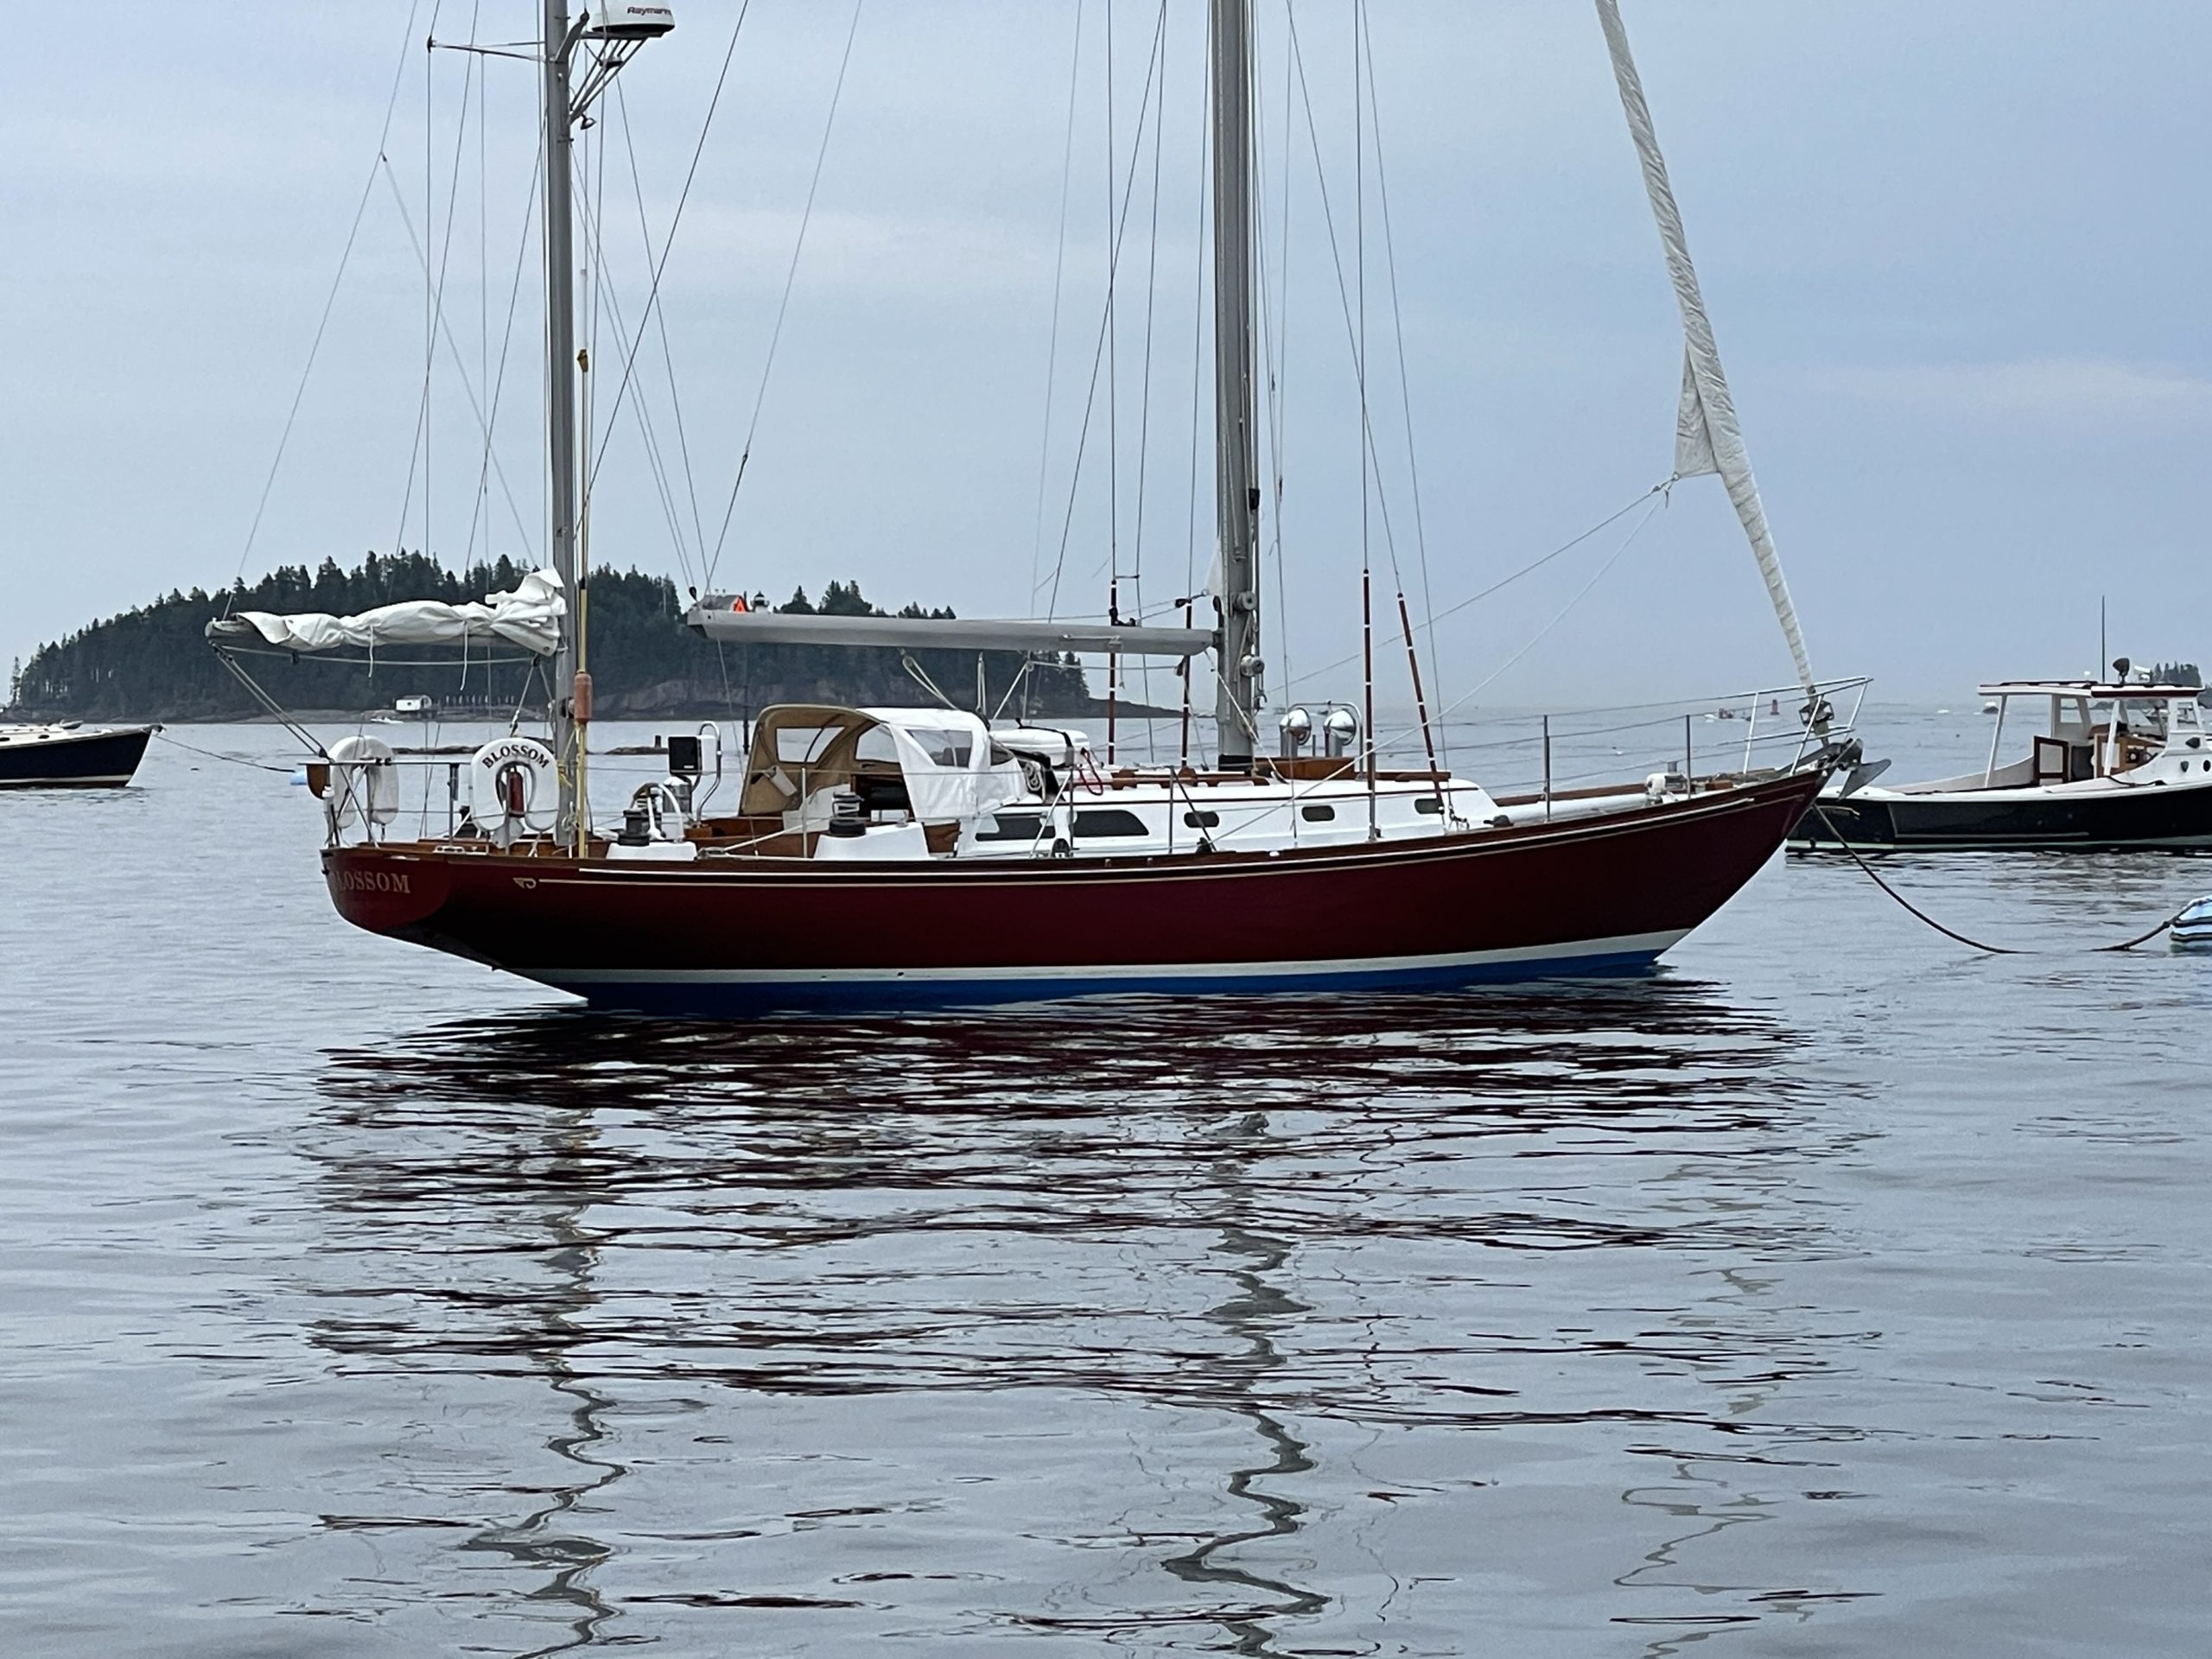 hinckley bermuda 40 sailboat data